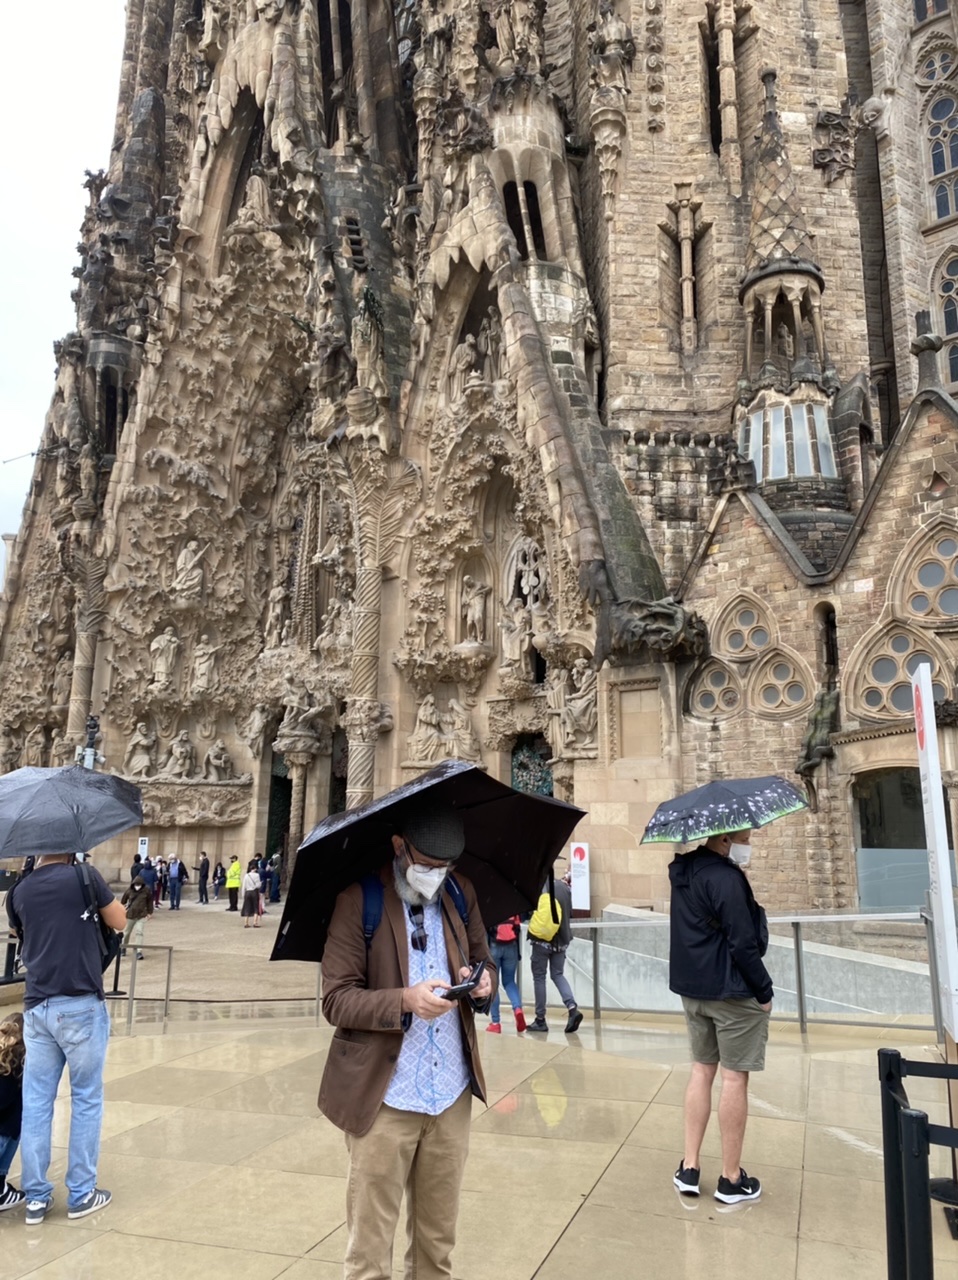 Mr. Snook and Sagrada Família